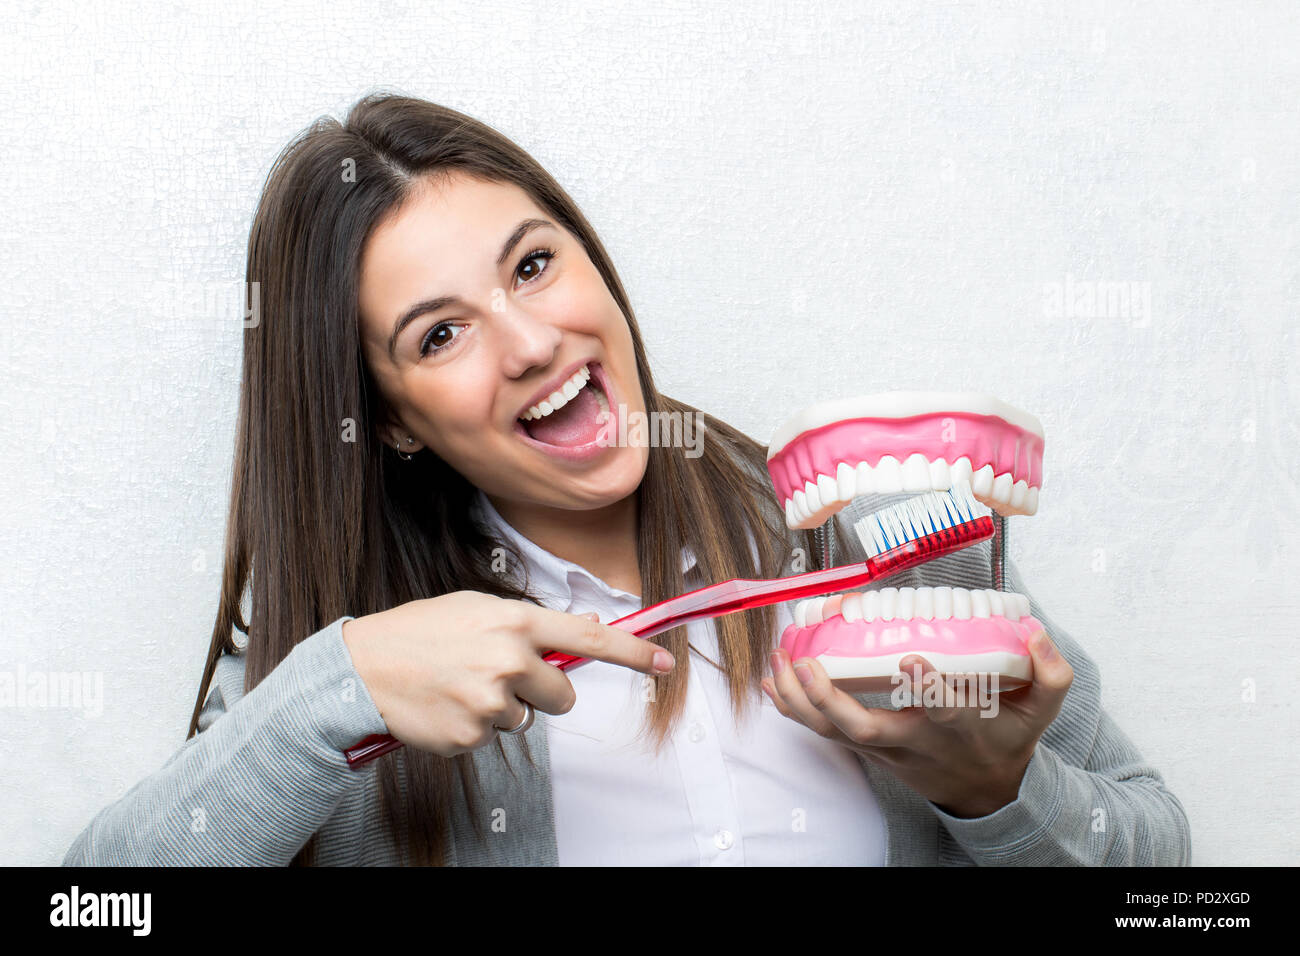 Relations sérieuses in Close up portrait of young girl montrant des dents humaines prothèse.femme nettoyer les dents sur prothèse avec une brosse à dents contre lig Banque D'Images